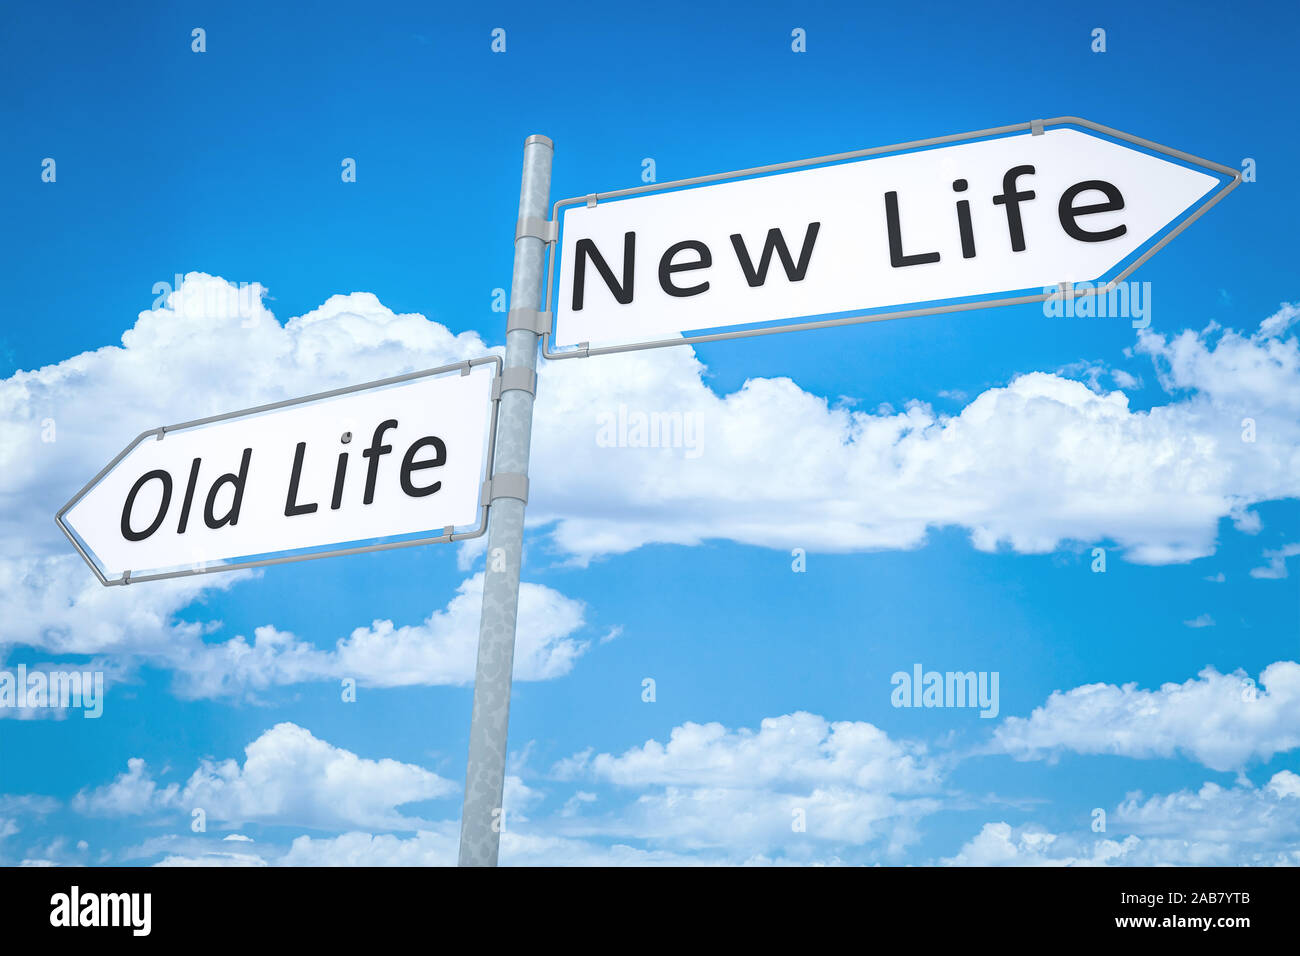 Find new life. Новая жизнь указатель. The New Life. Old Life. New Life old Life.